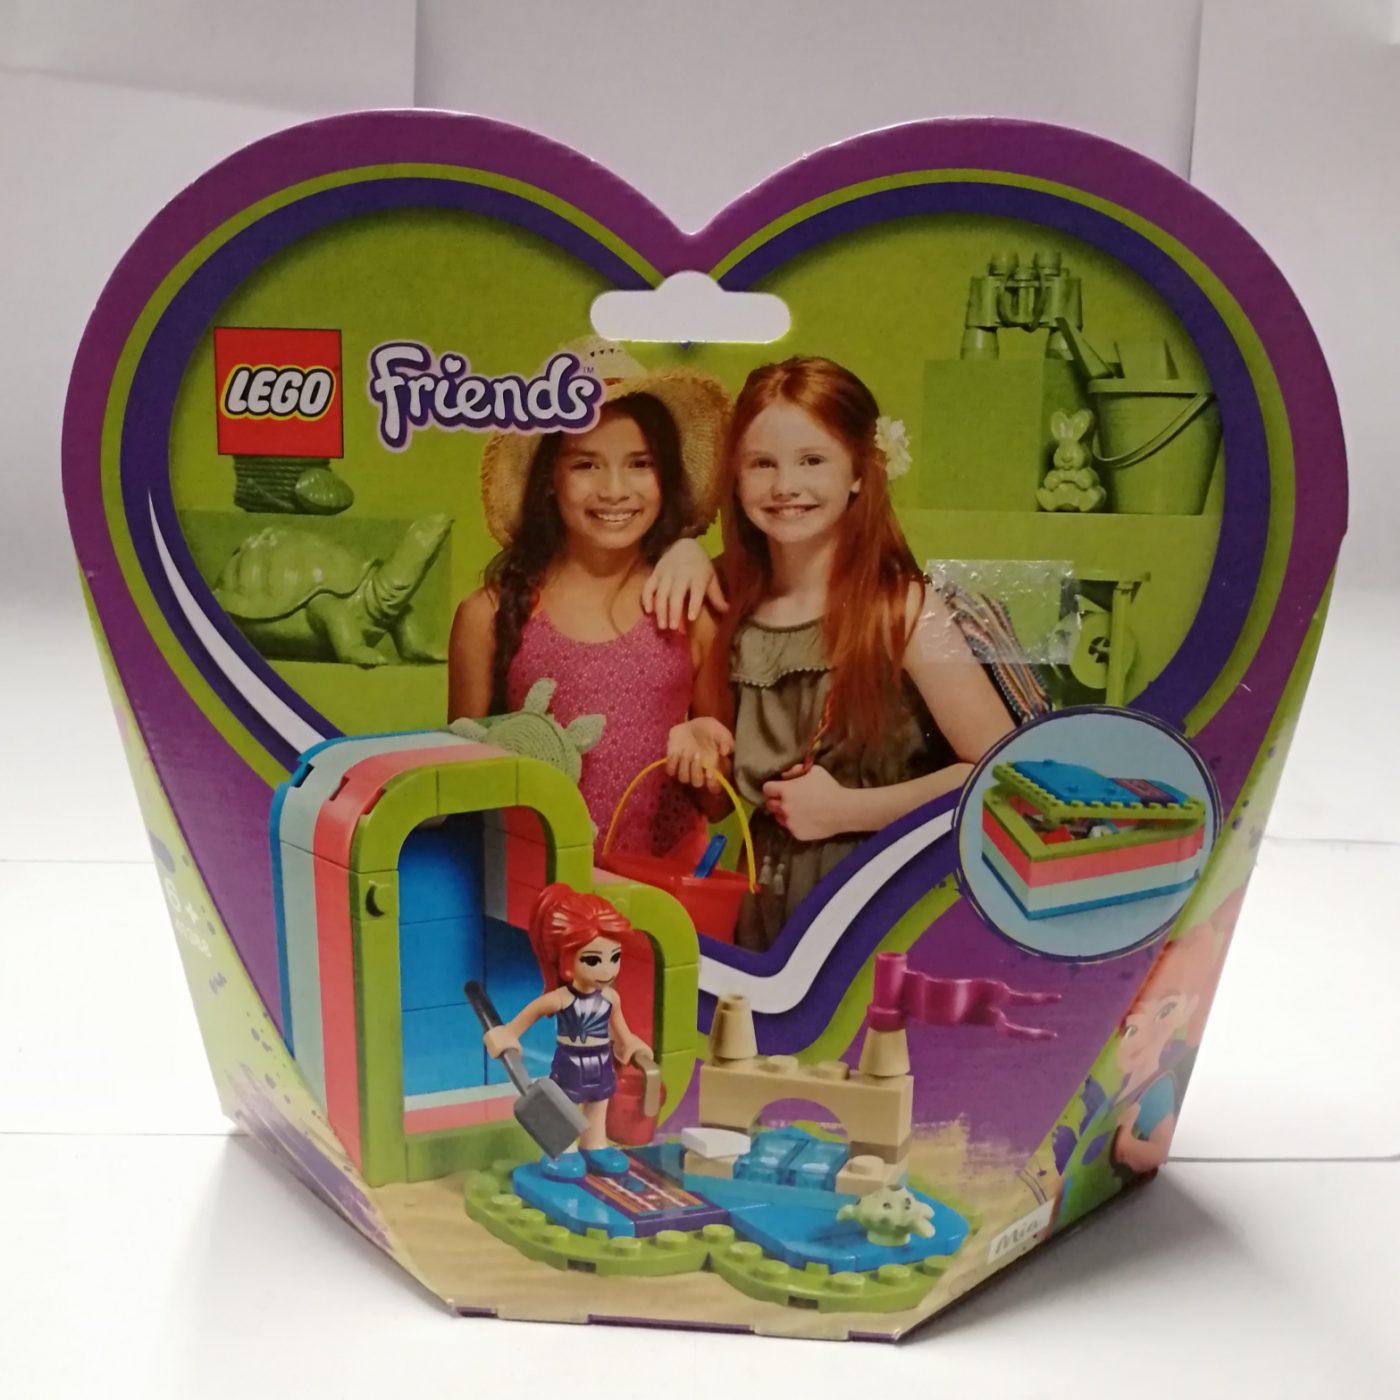 Lego Friends 41388 Mias sommerliche HerzboxLego Friends 41388 Mias sommerliche Herzbox vorne